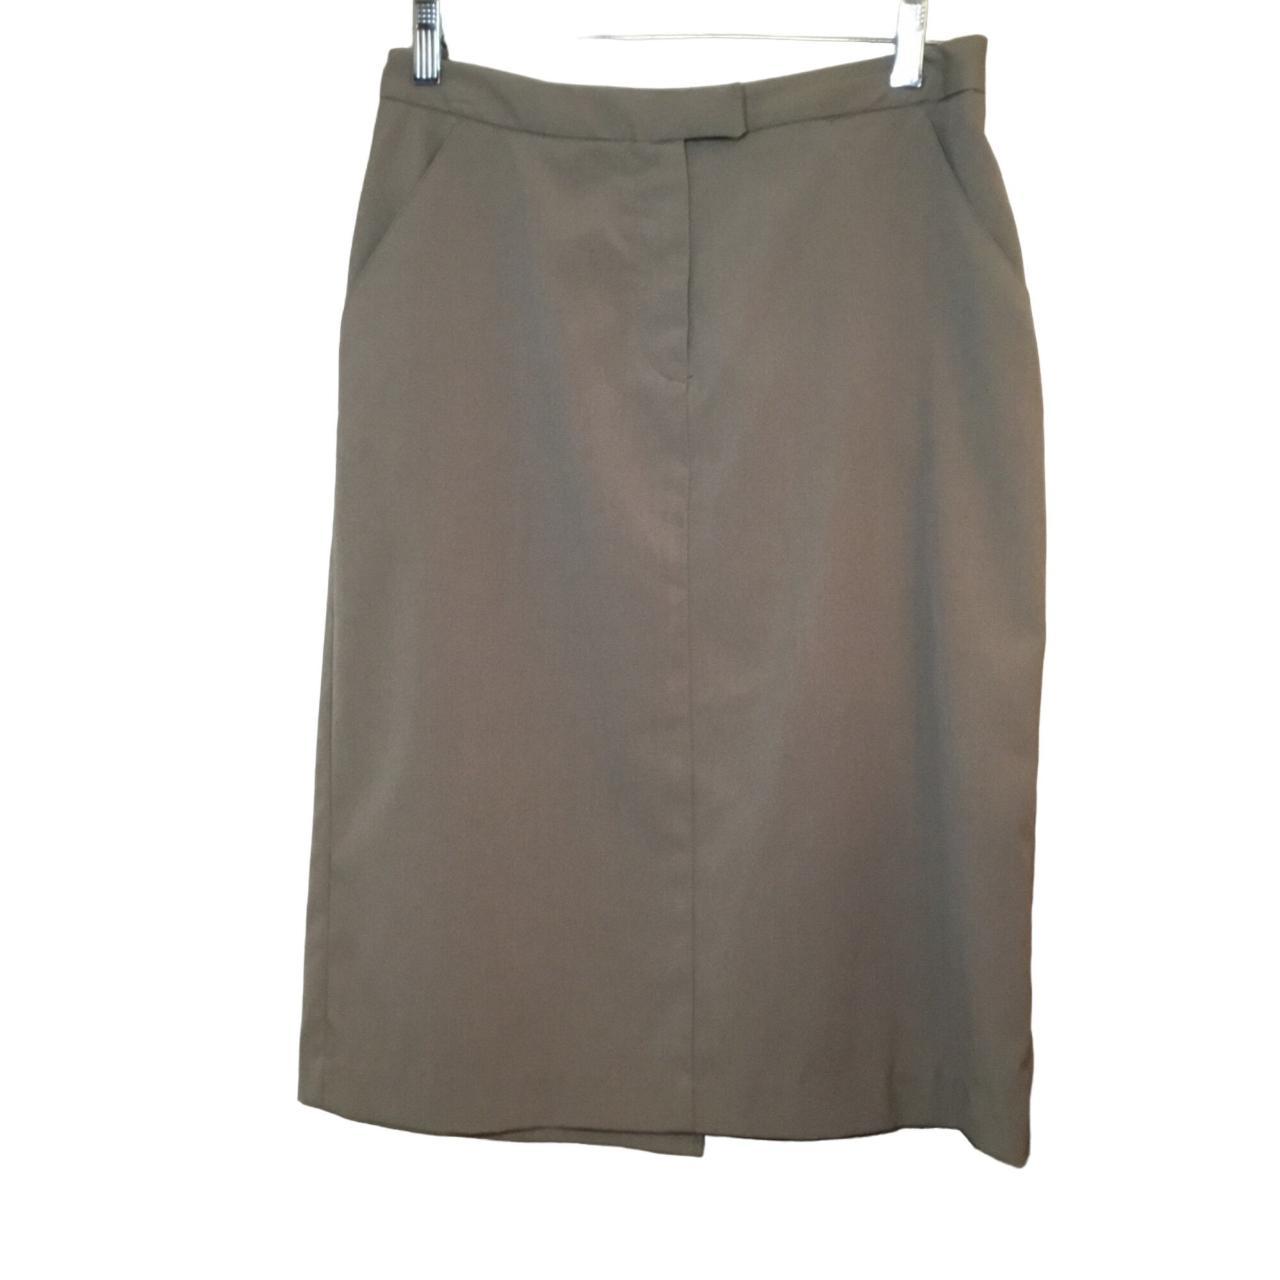 Vintage Basic A-line Skirt with Pockets and Belt... - Depop